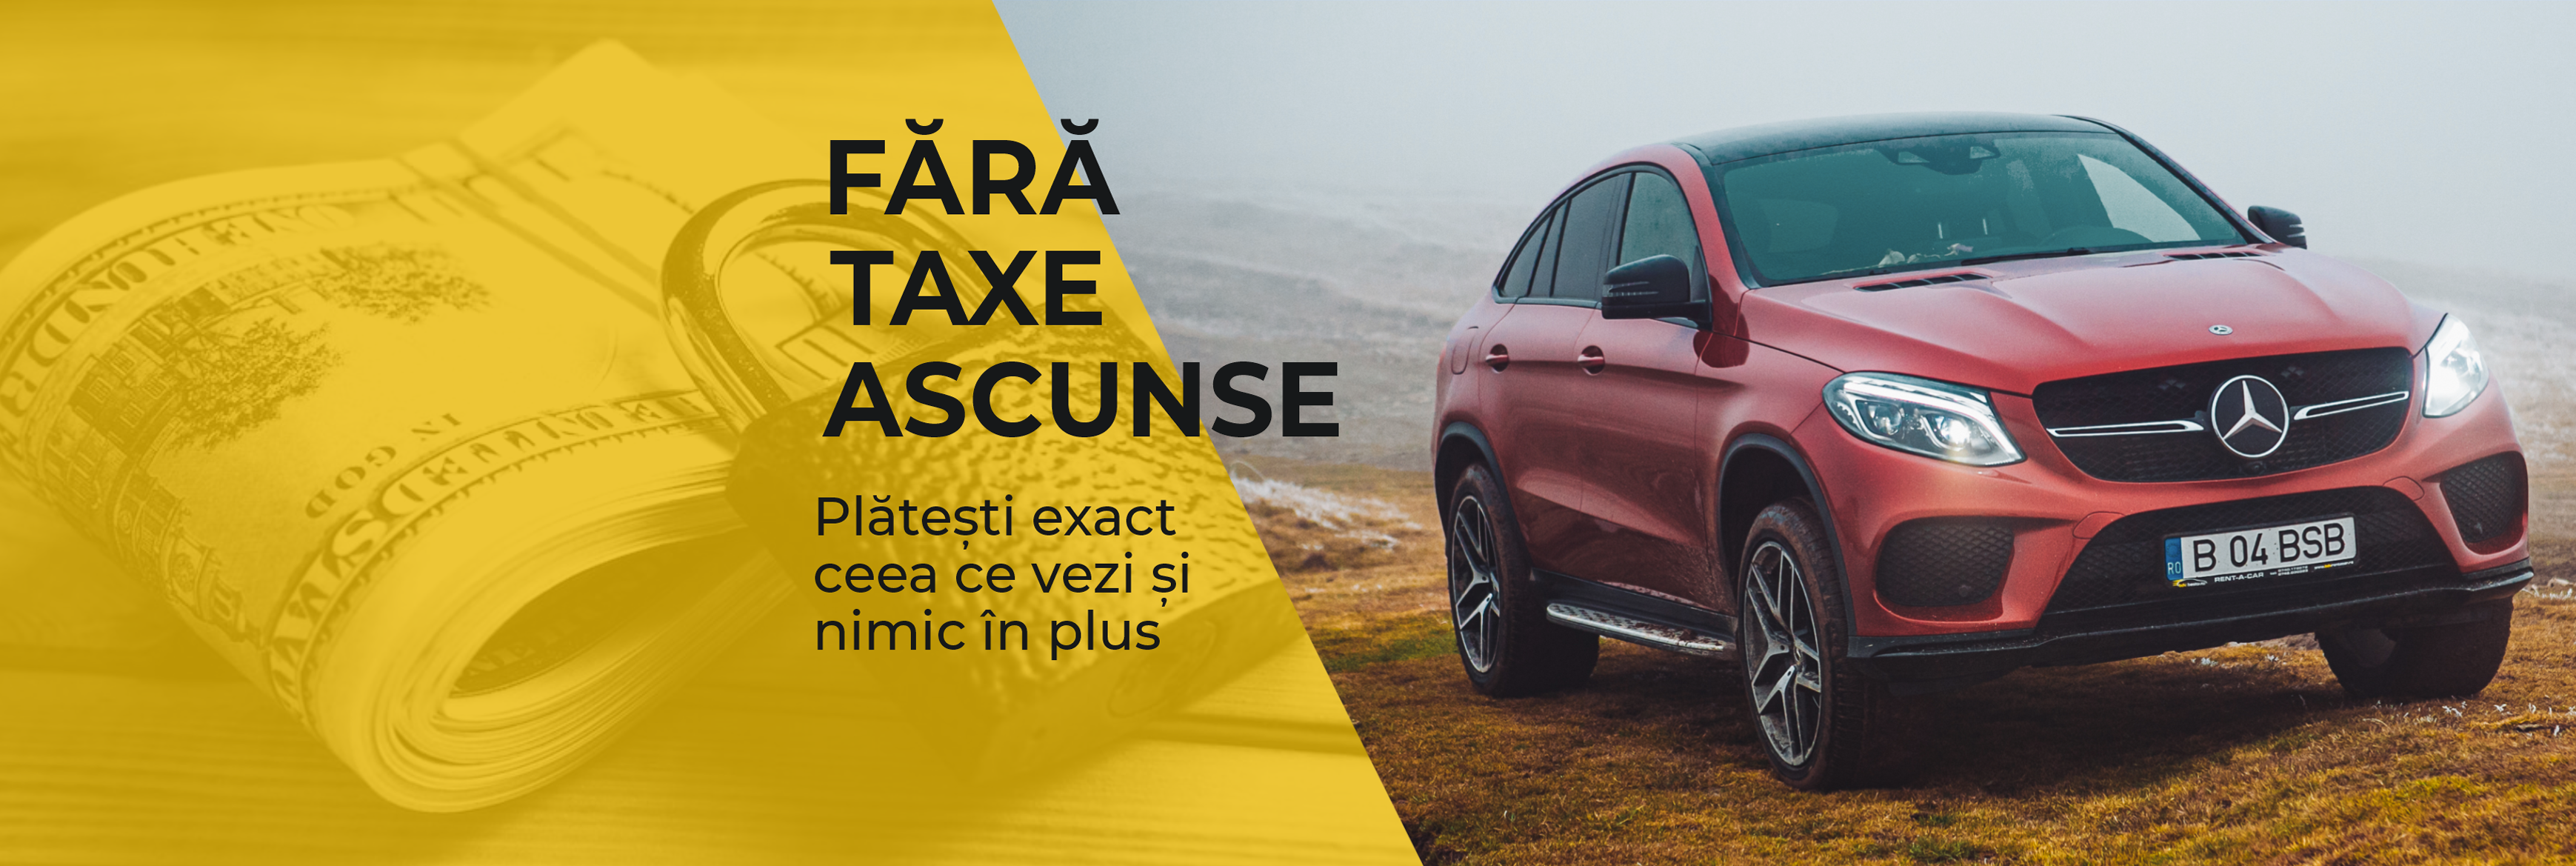 Fara Taxe Ascunse